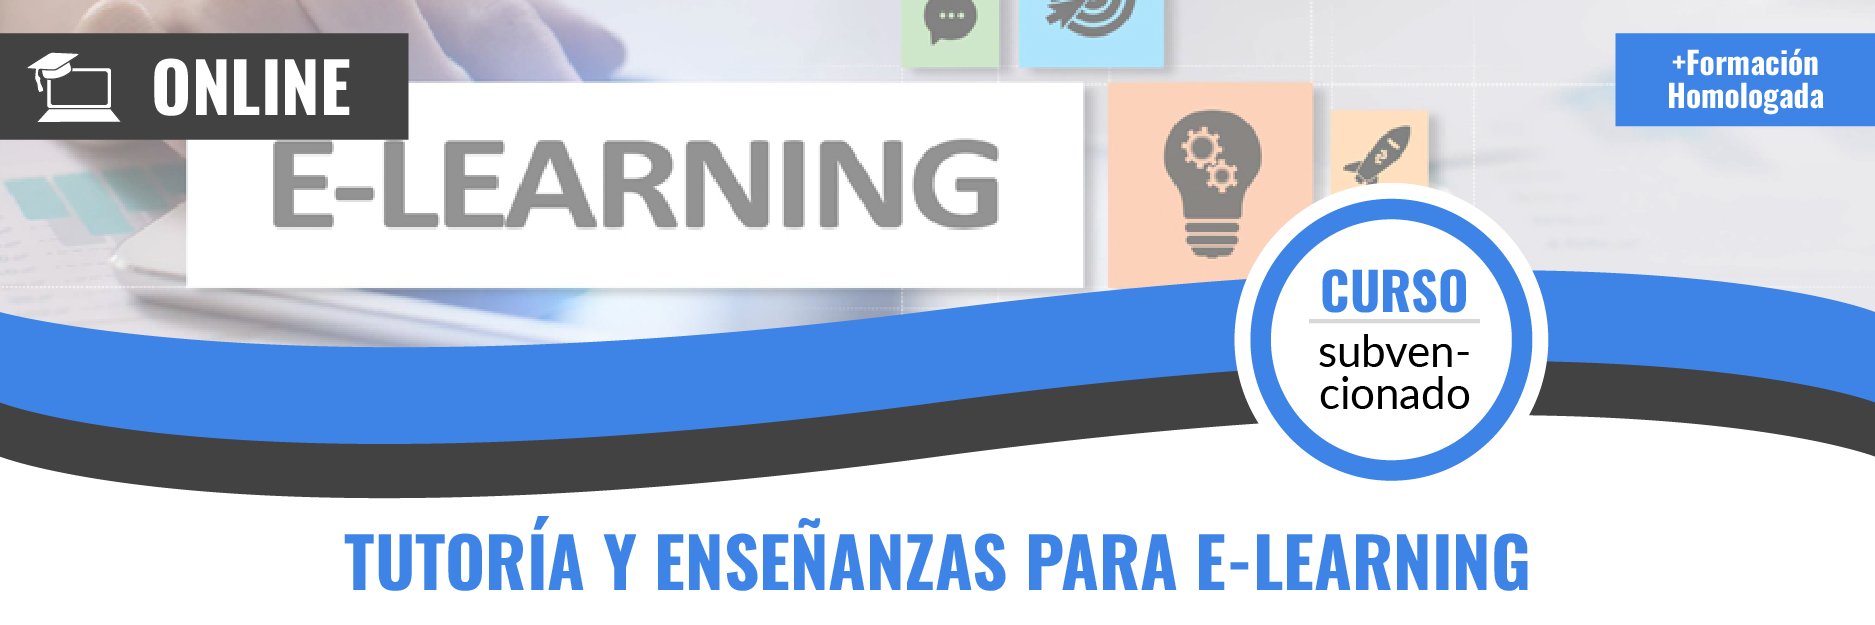 Curso gratis de SSCE144PO Tutoría y enseñanzas para e-learning teleformación